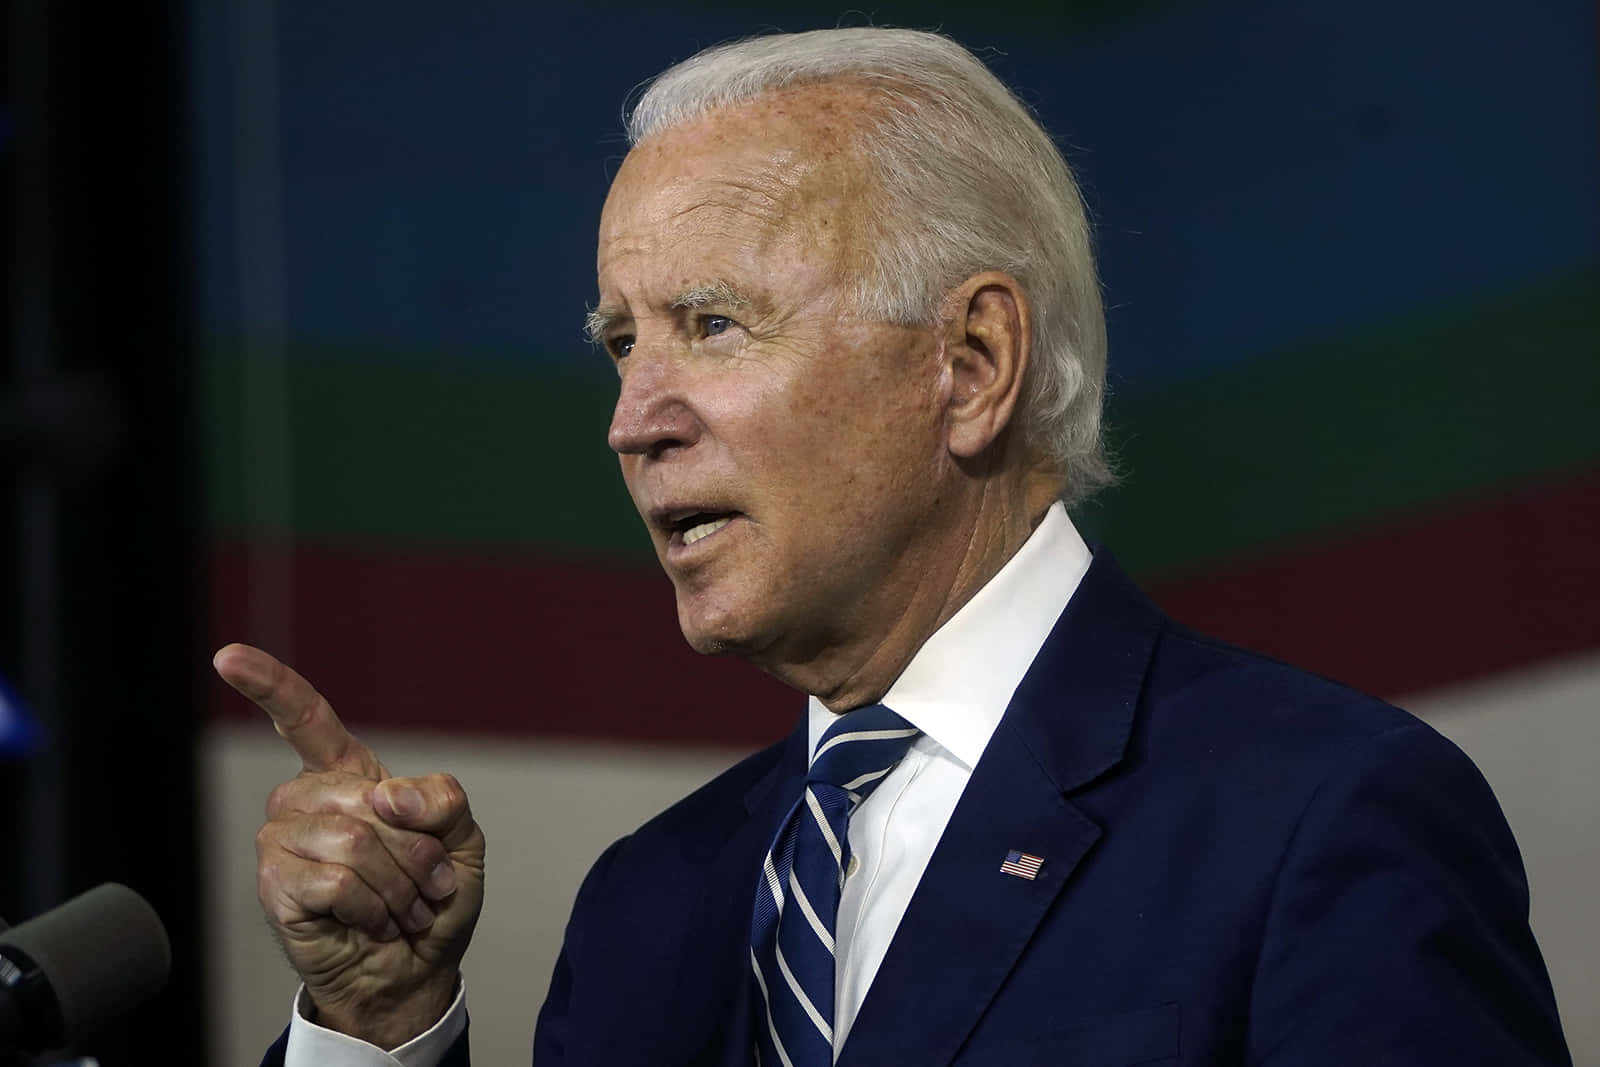 Ehemaligervizepräsident Joe Biden Gibt Seine Kandidatur Für Die Präsidentschaftswahl 2020 Bekannt.